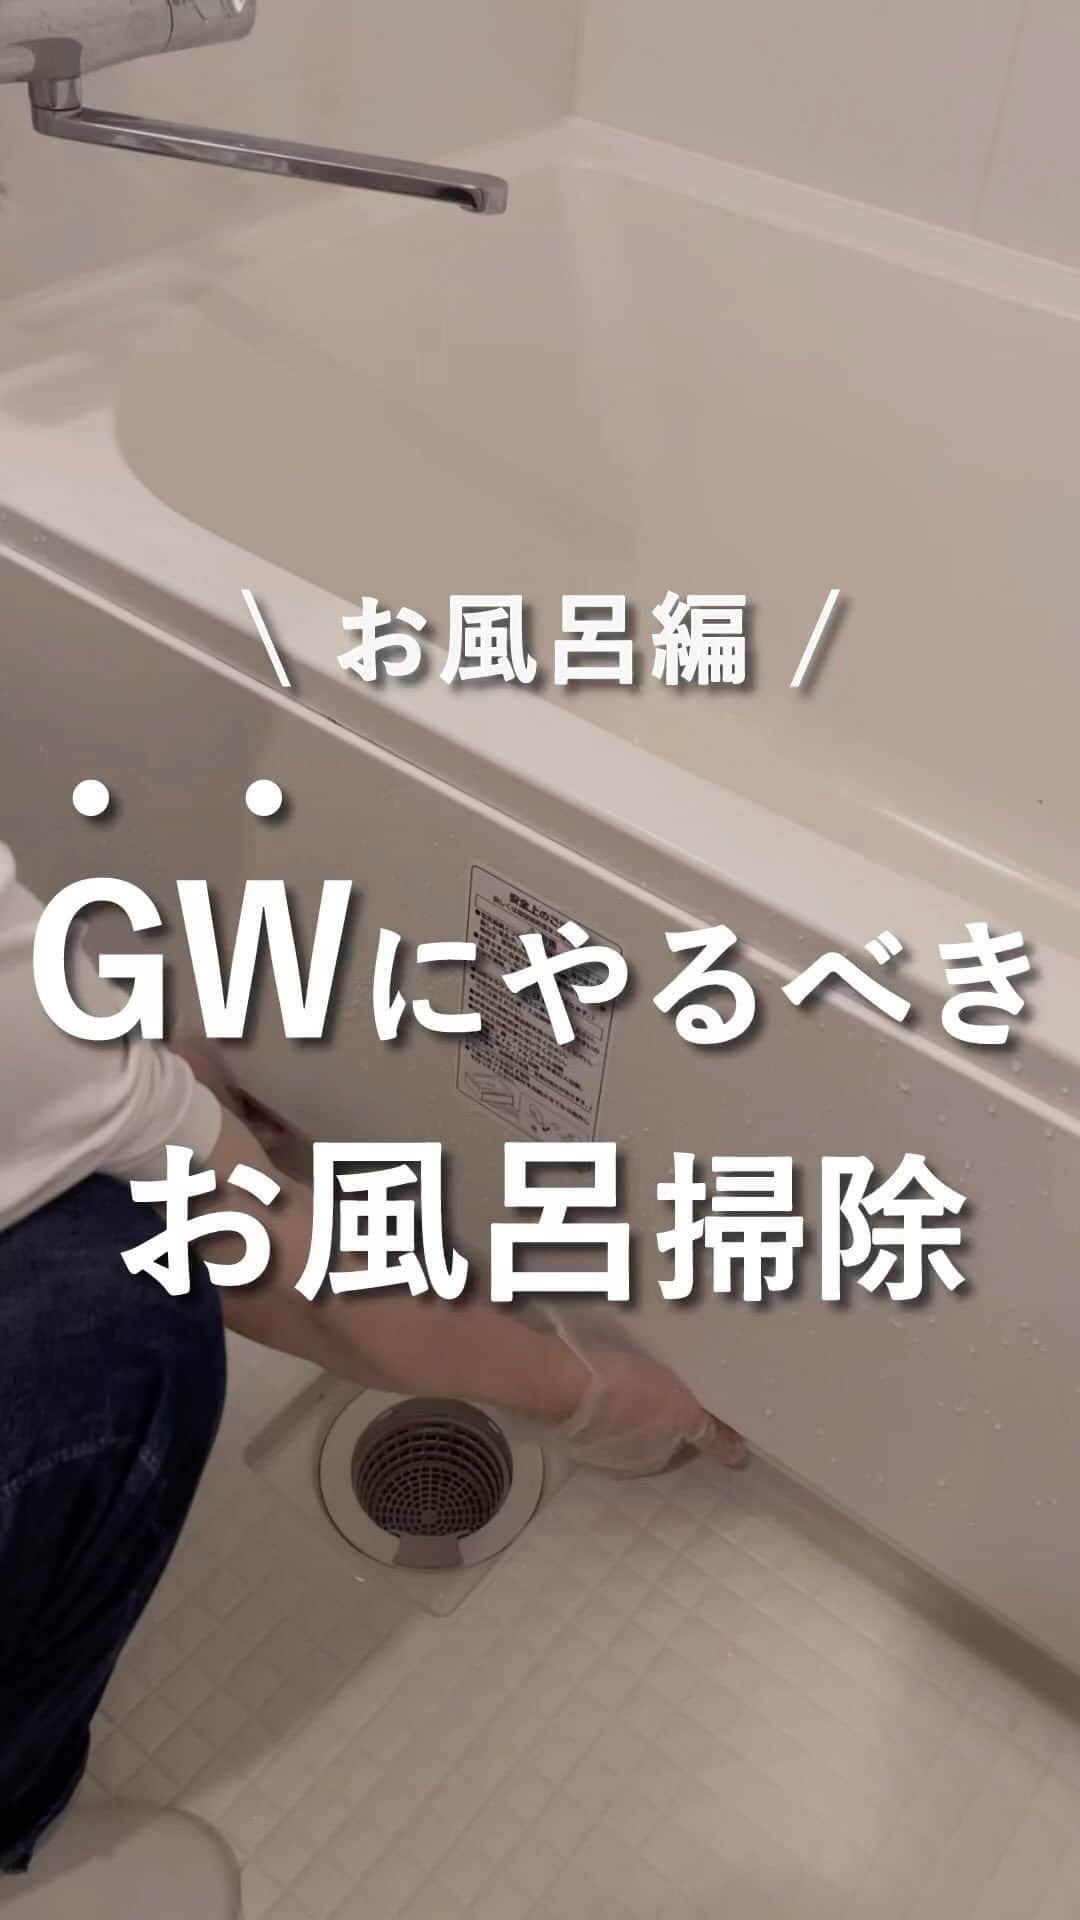 けいのインスタグラム：「他の投稿も見る→ @keikun.simplelife   【GWにやるべきお風呂掃除】  今回はGWにやるべきお風呂掃除を紹介しました〜！  お風呂のエプロンを始めて掃除したのですが、思っていたのとは違いすぎて驚きました。。。  このGWに普段できないお風呂掃除しておきましょう〜！  ━━━━━━━━━━━━━━━━━━━  📌アカウント紹介 └暮らしについて→ @keikun.simplelife  └お金について→ @keikun_moneylife  └SNS運用について→ @keikun_studylabo  └プライベート→ @kei_private_   ━━━━━━━━━━━━━━━━━━━  #暮らし  #一人暮らし #ひとり暮らし#便利アイテム  #掃除 #掃除アイテム #便利アイテム #便利グッズ #お部屋紹介 #ルームツアー」